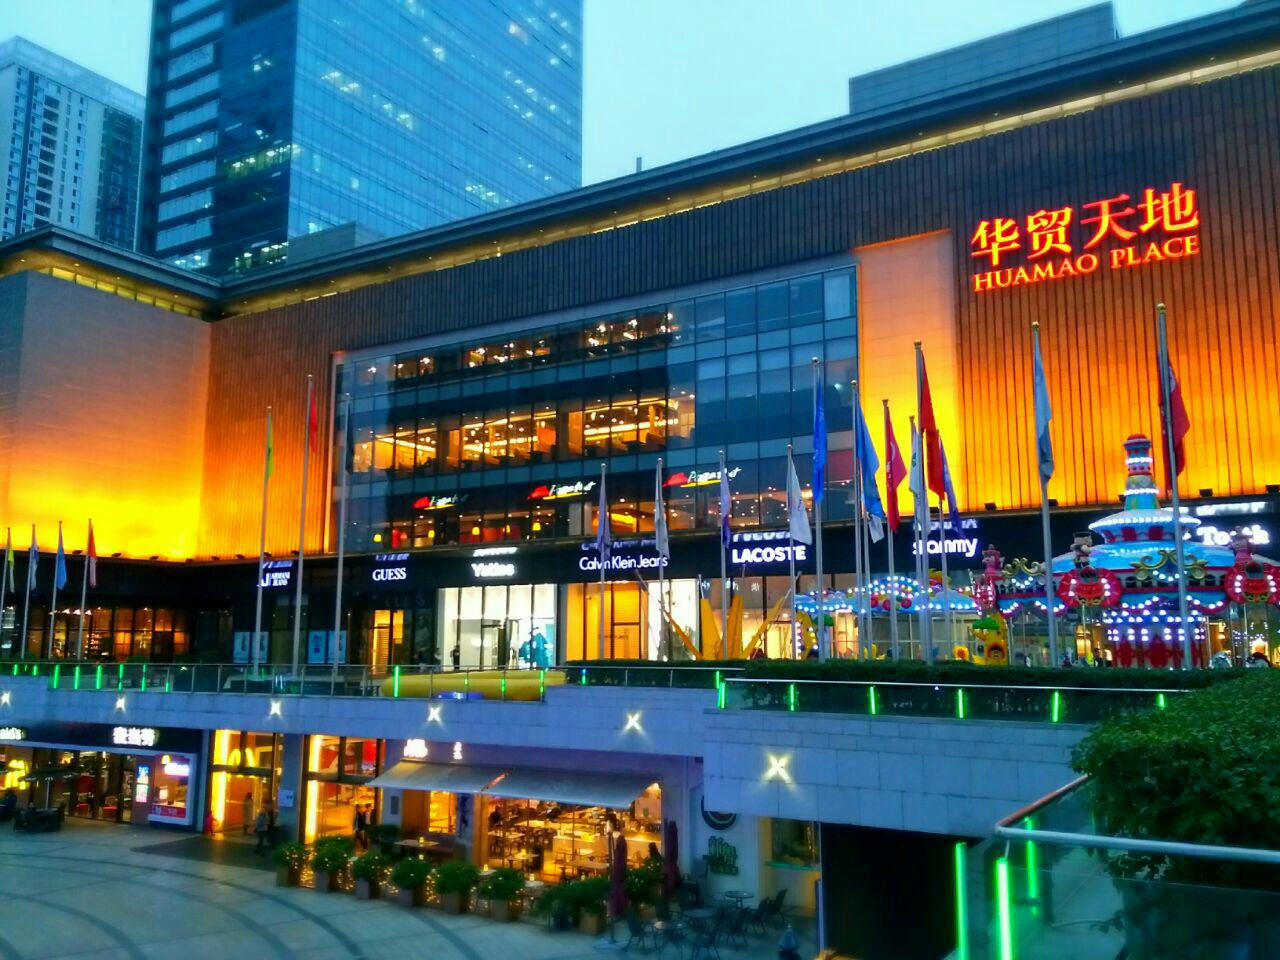 惠州欢乐新地标 6万平惠东天虹购物中心精彩启航_深圳新闻网